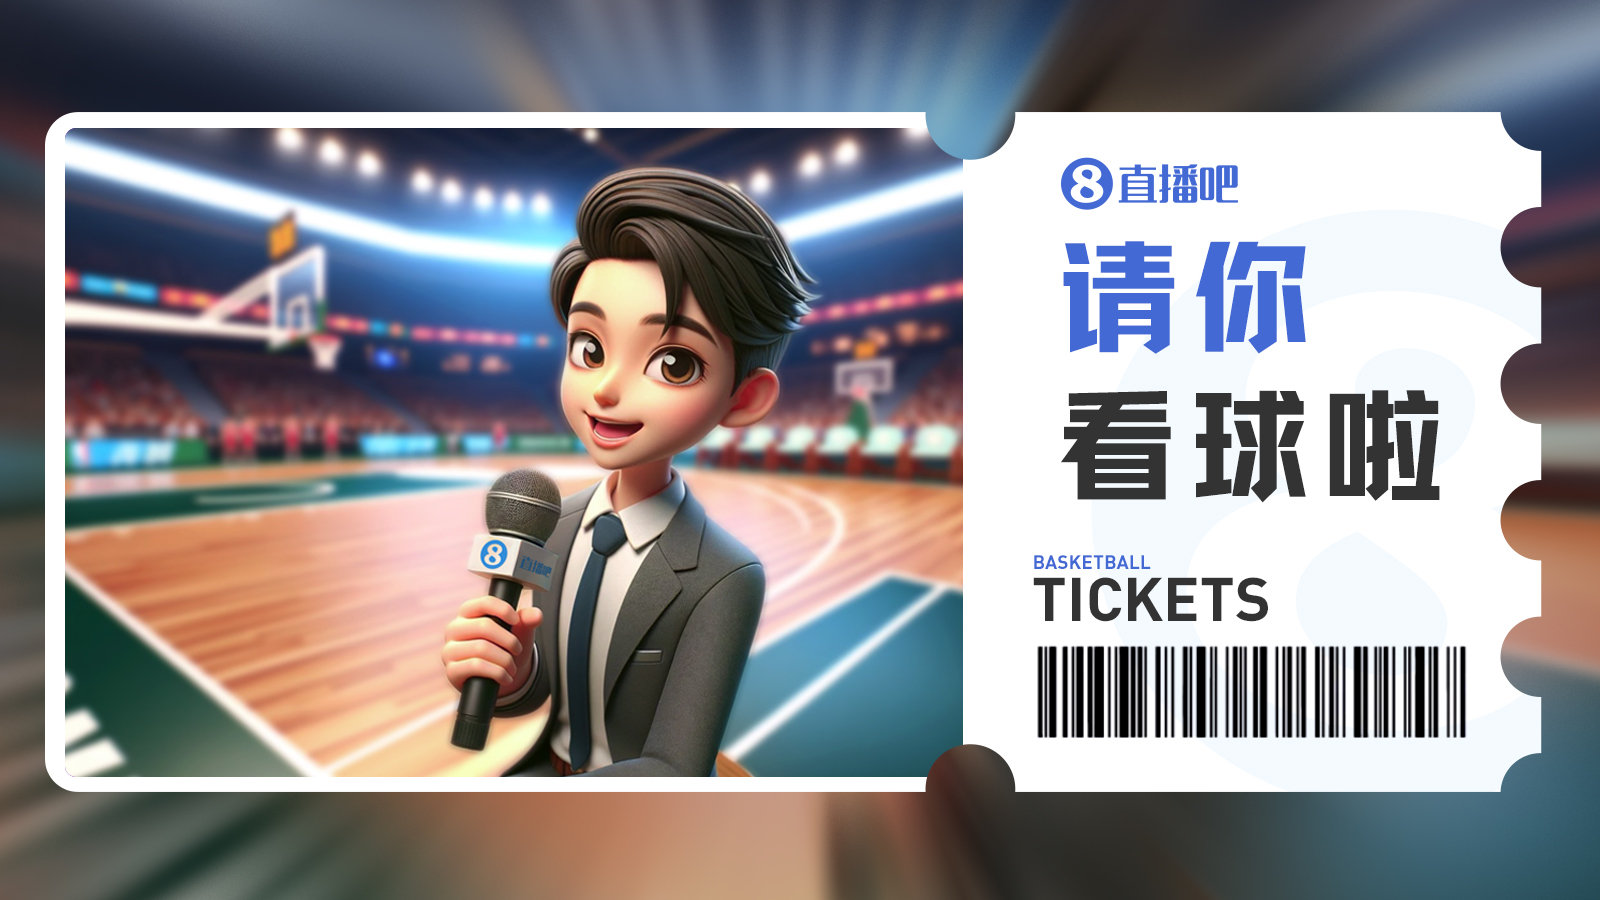 请你看球第7期留言抽3月27日北京vs广东免费门票